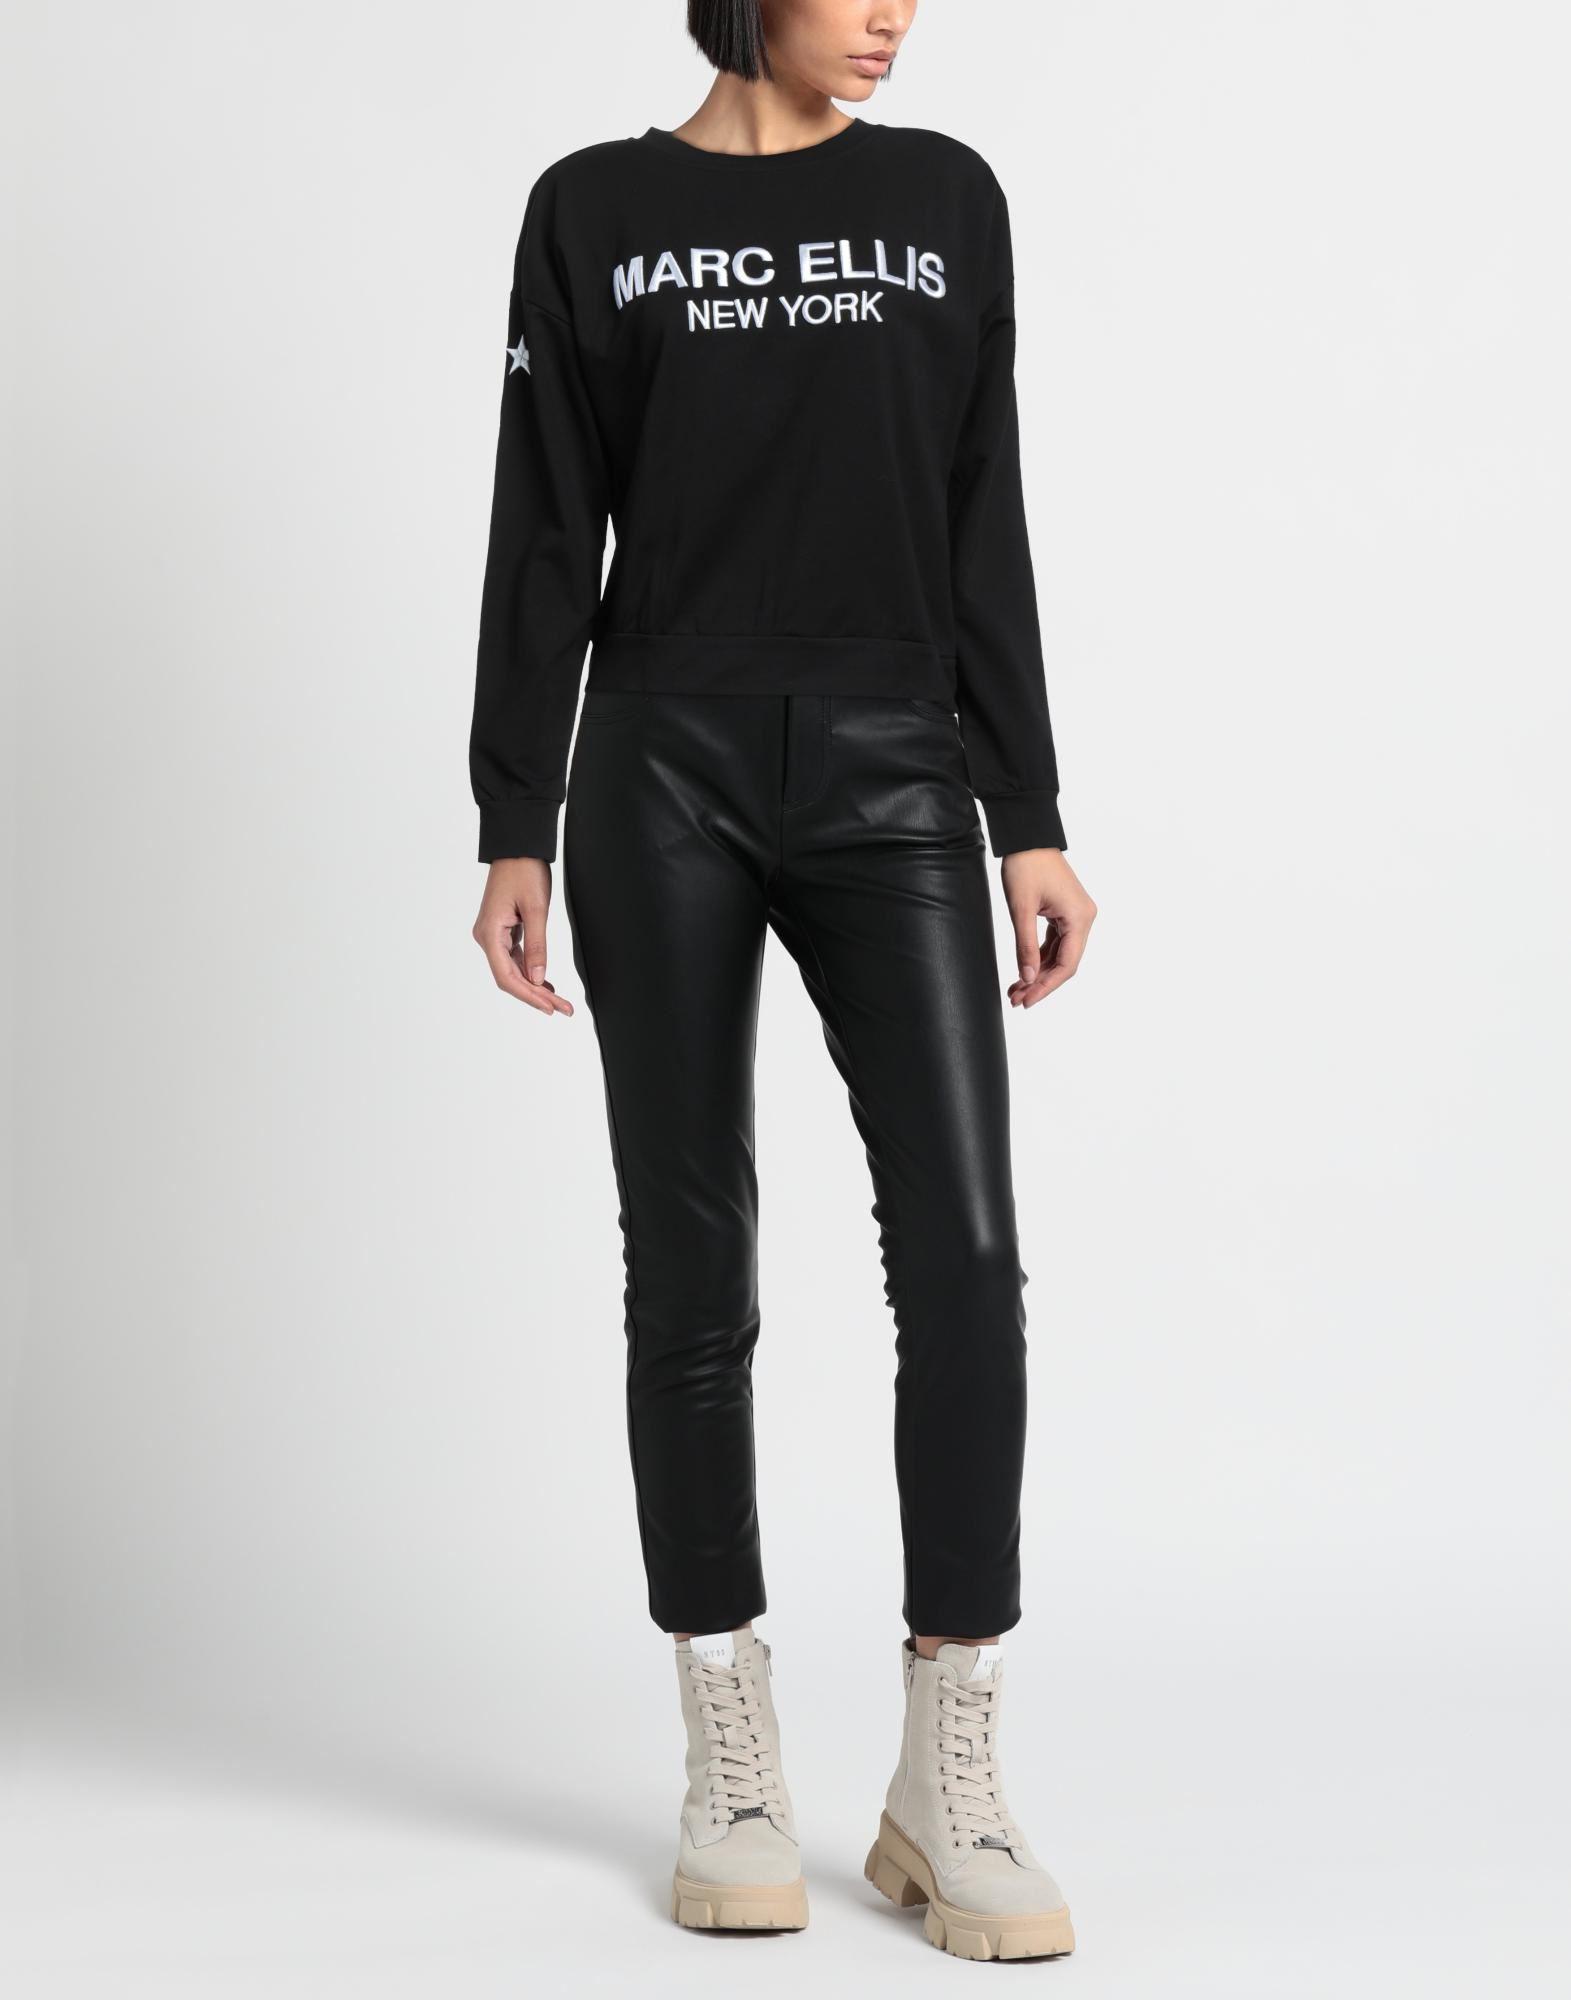 Marc Ellis Sweatshirt in Black | Lyst